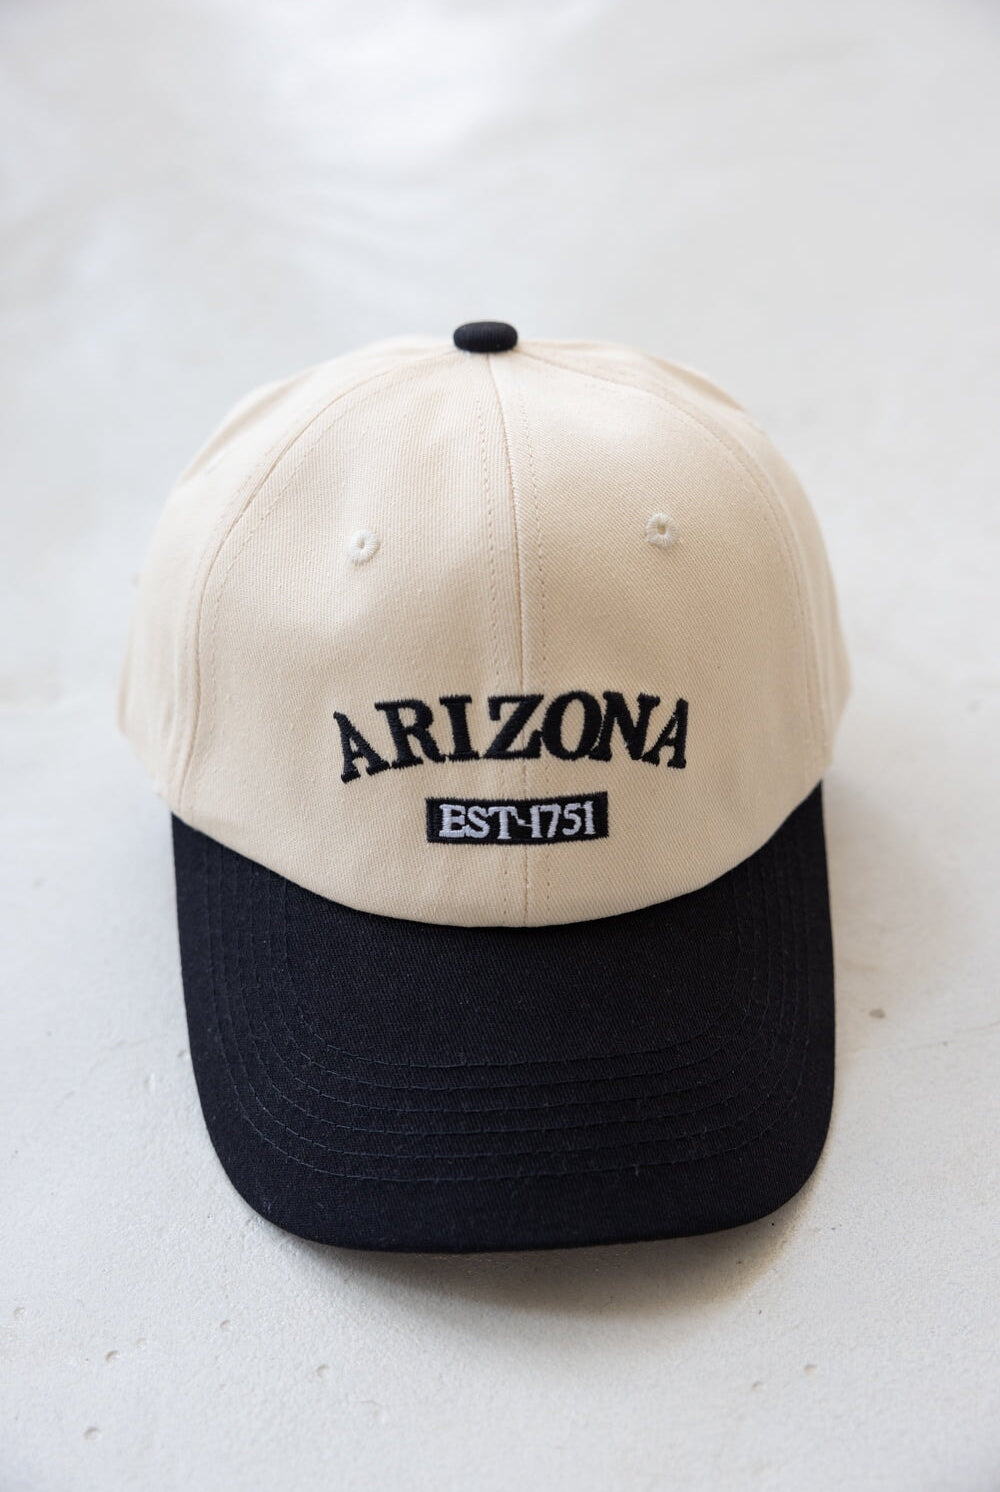 כובע אריזונה TwentySix Black One Size 